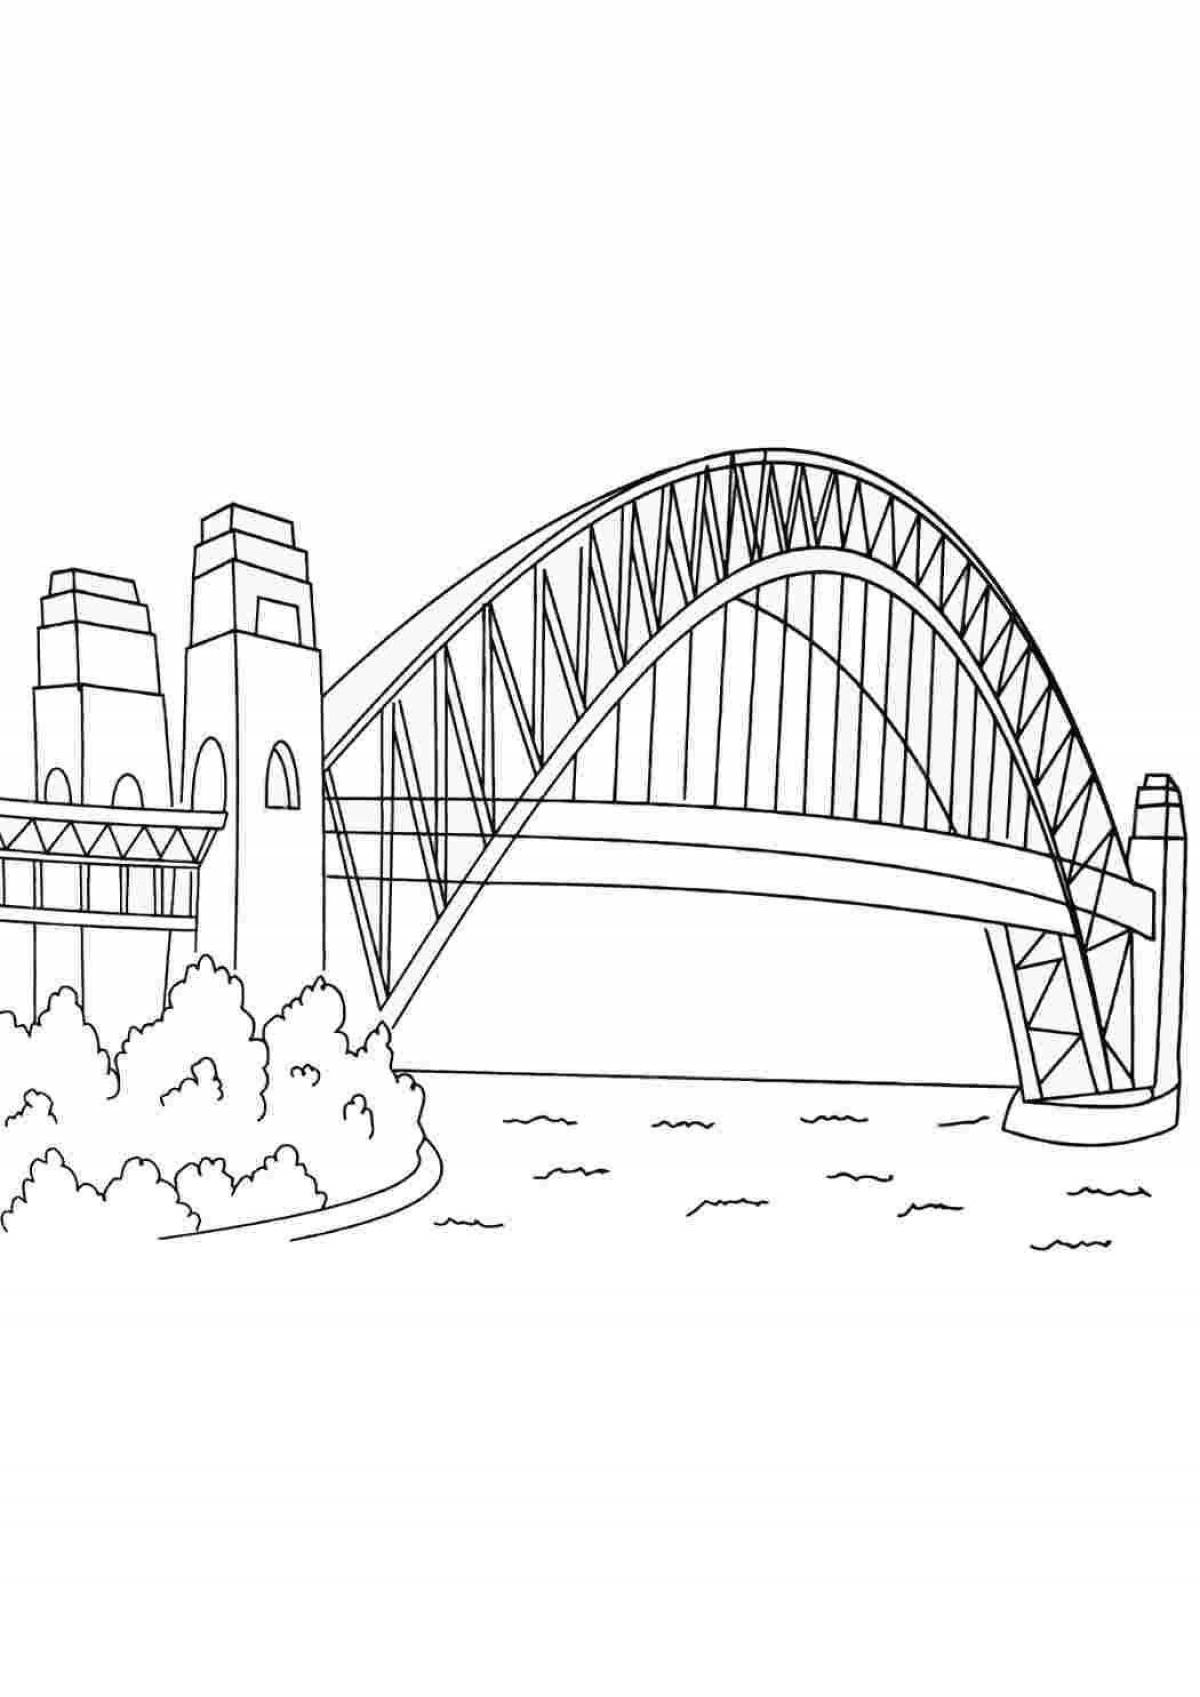 Living bridge coloring book for kids